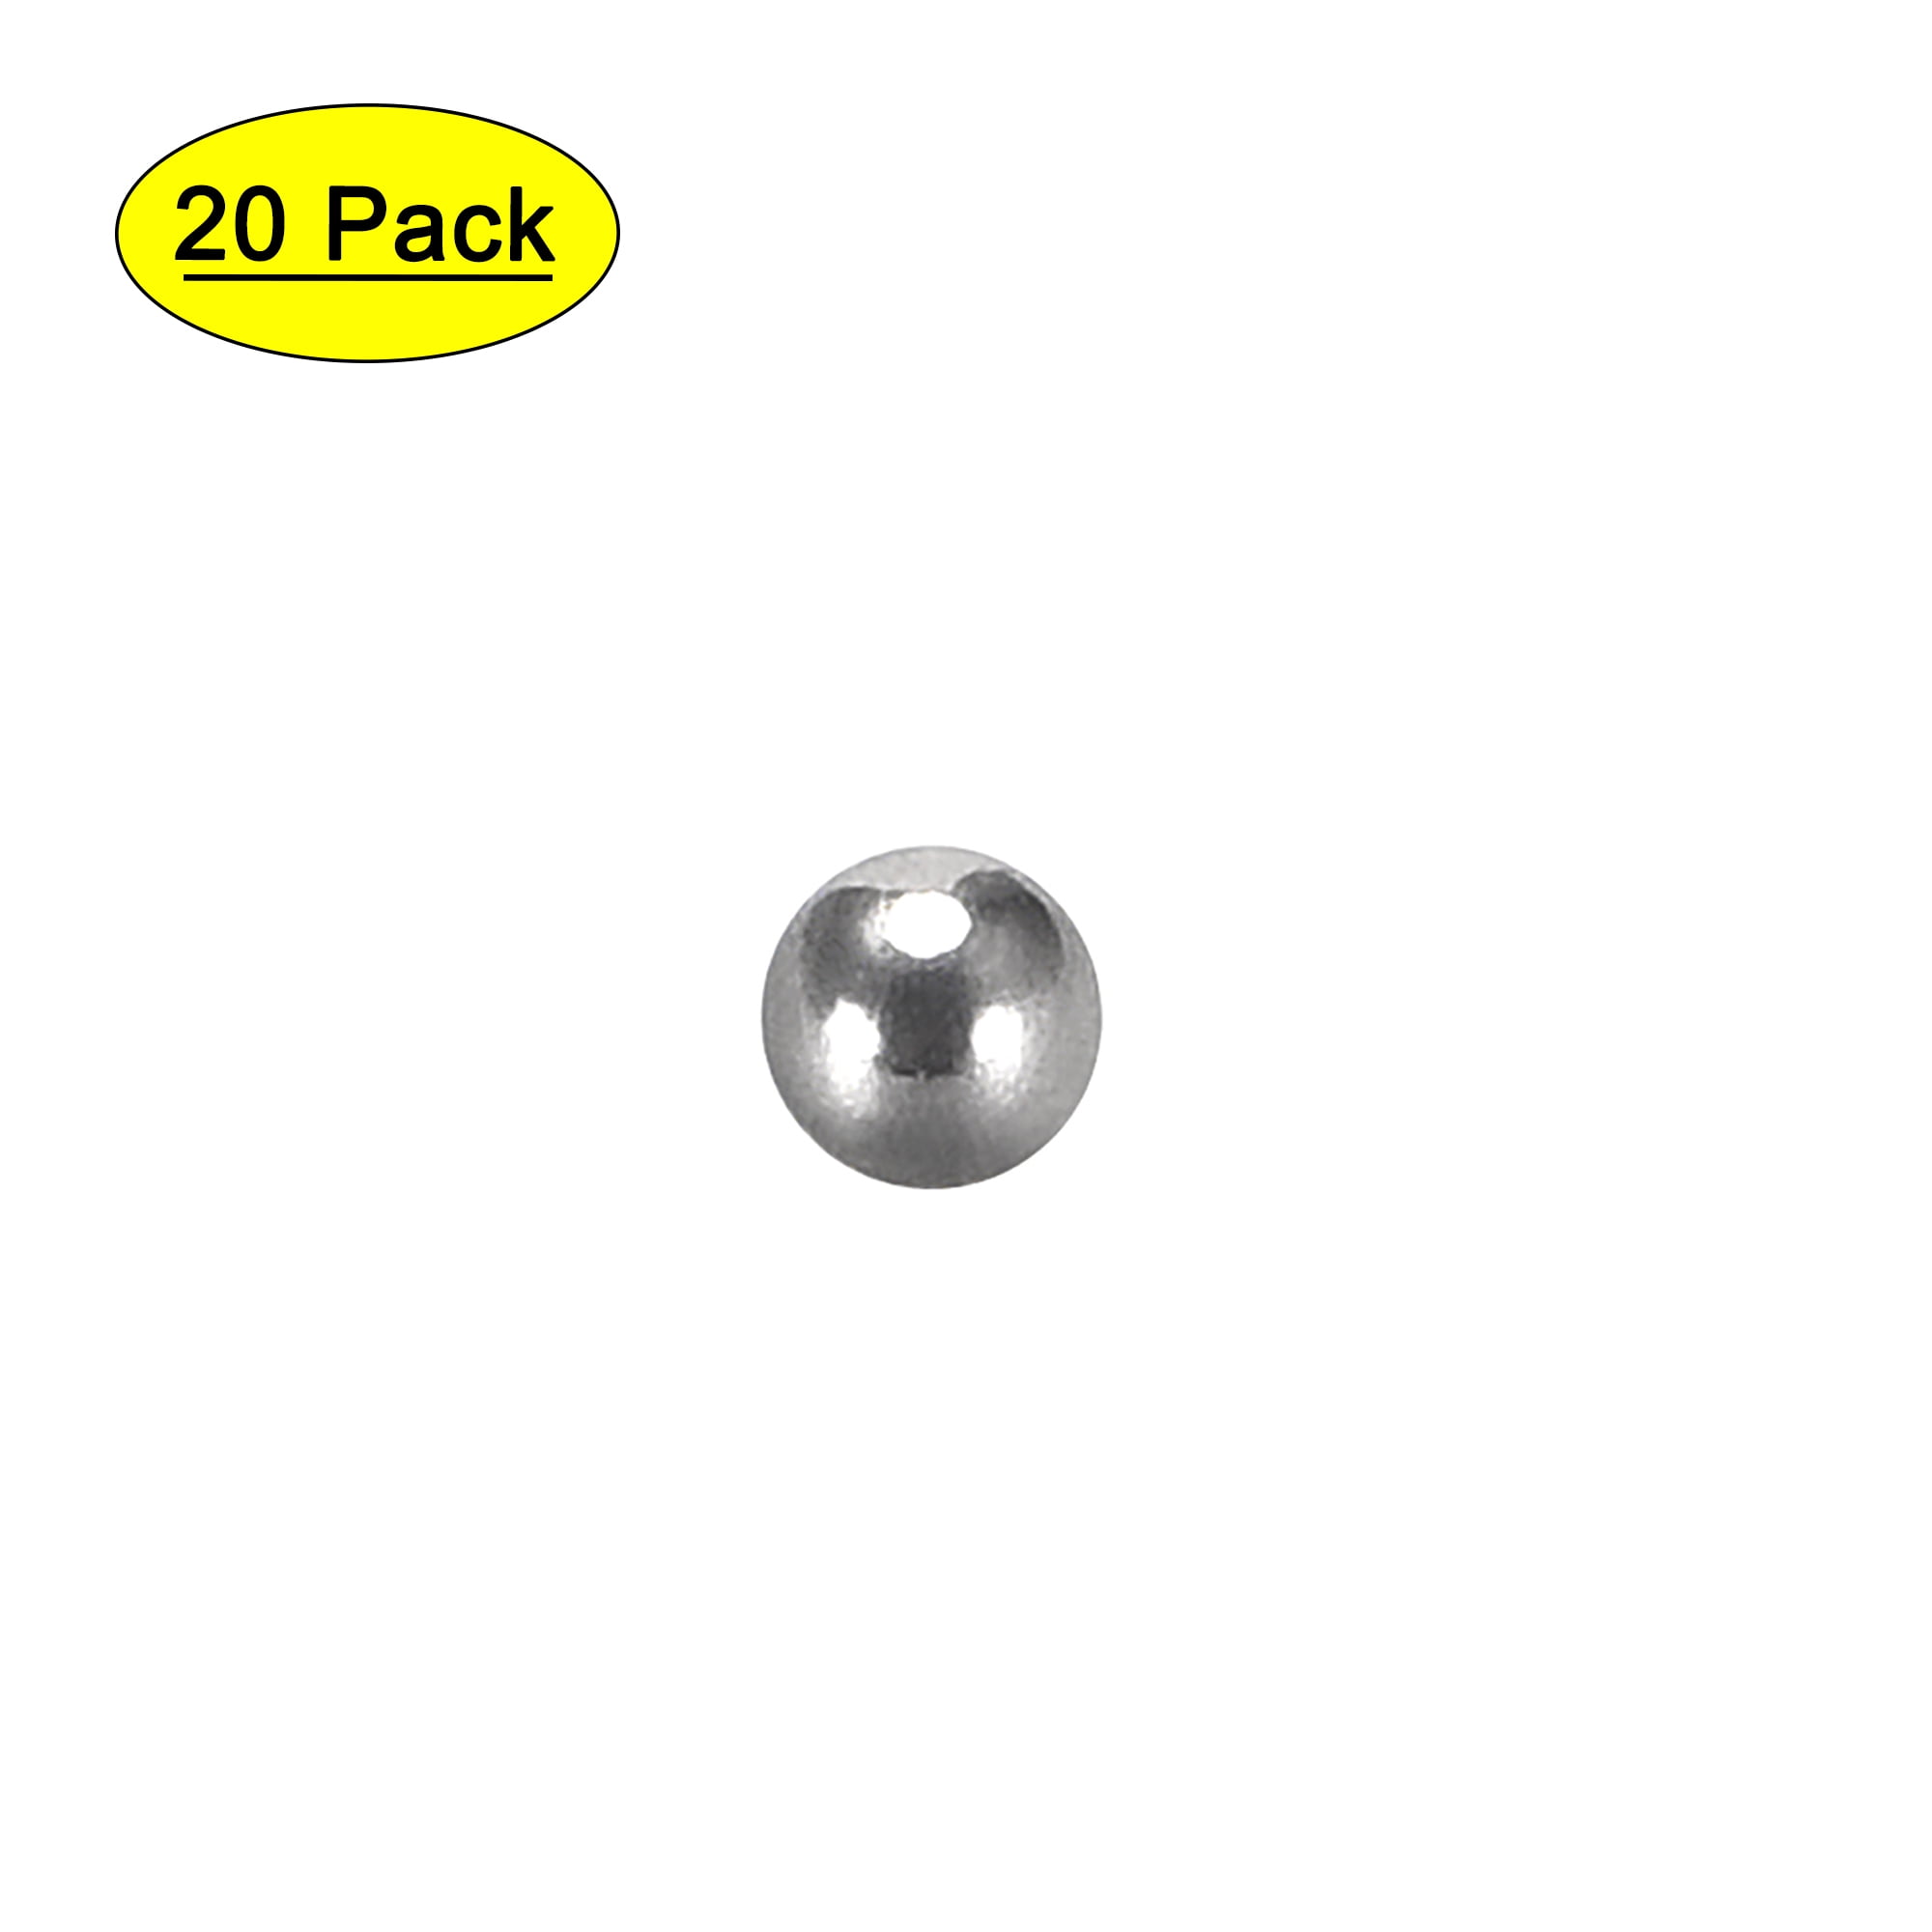 5/32" inch Diameter Chrome Steel Ball Bearing G10 